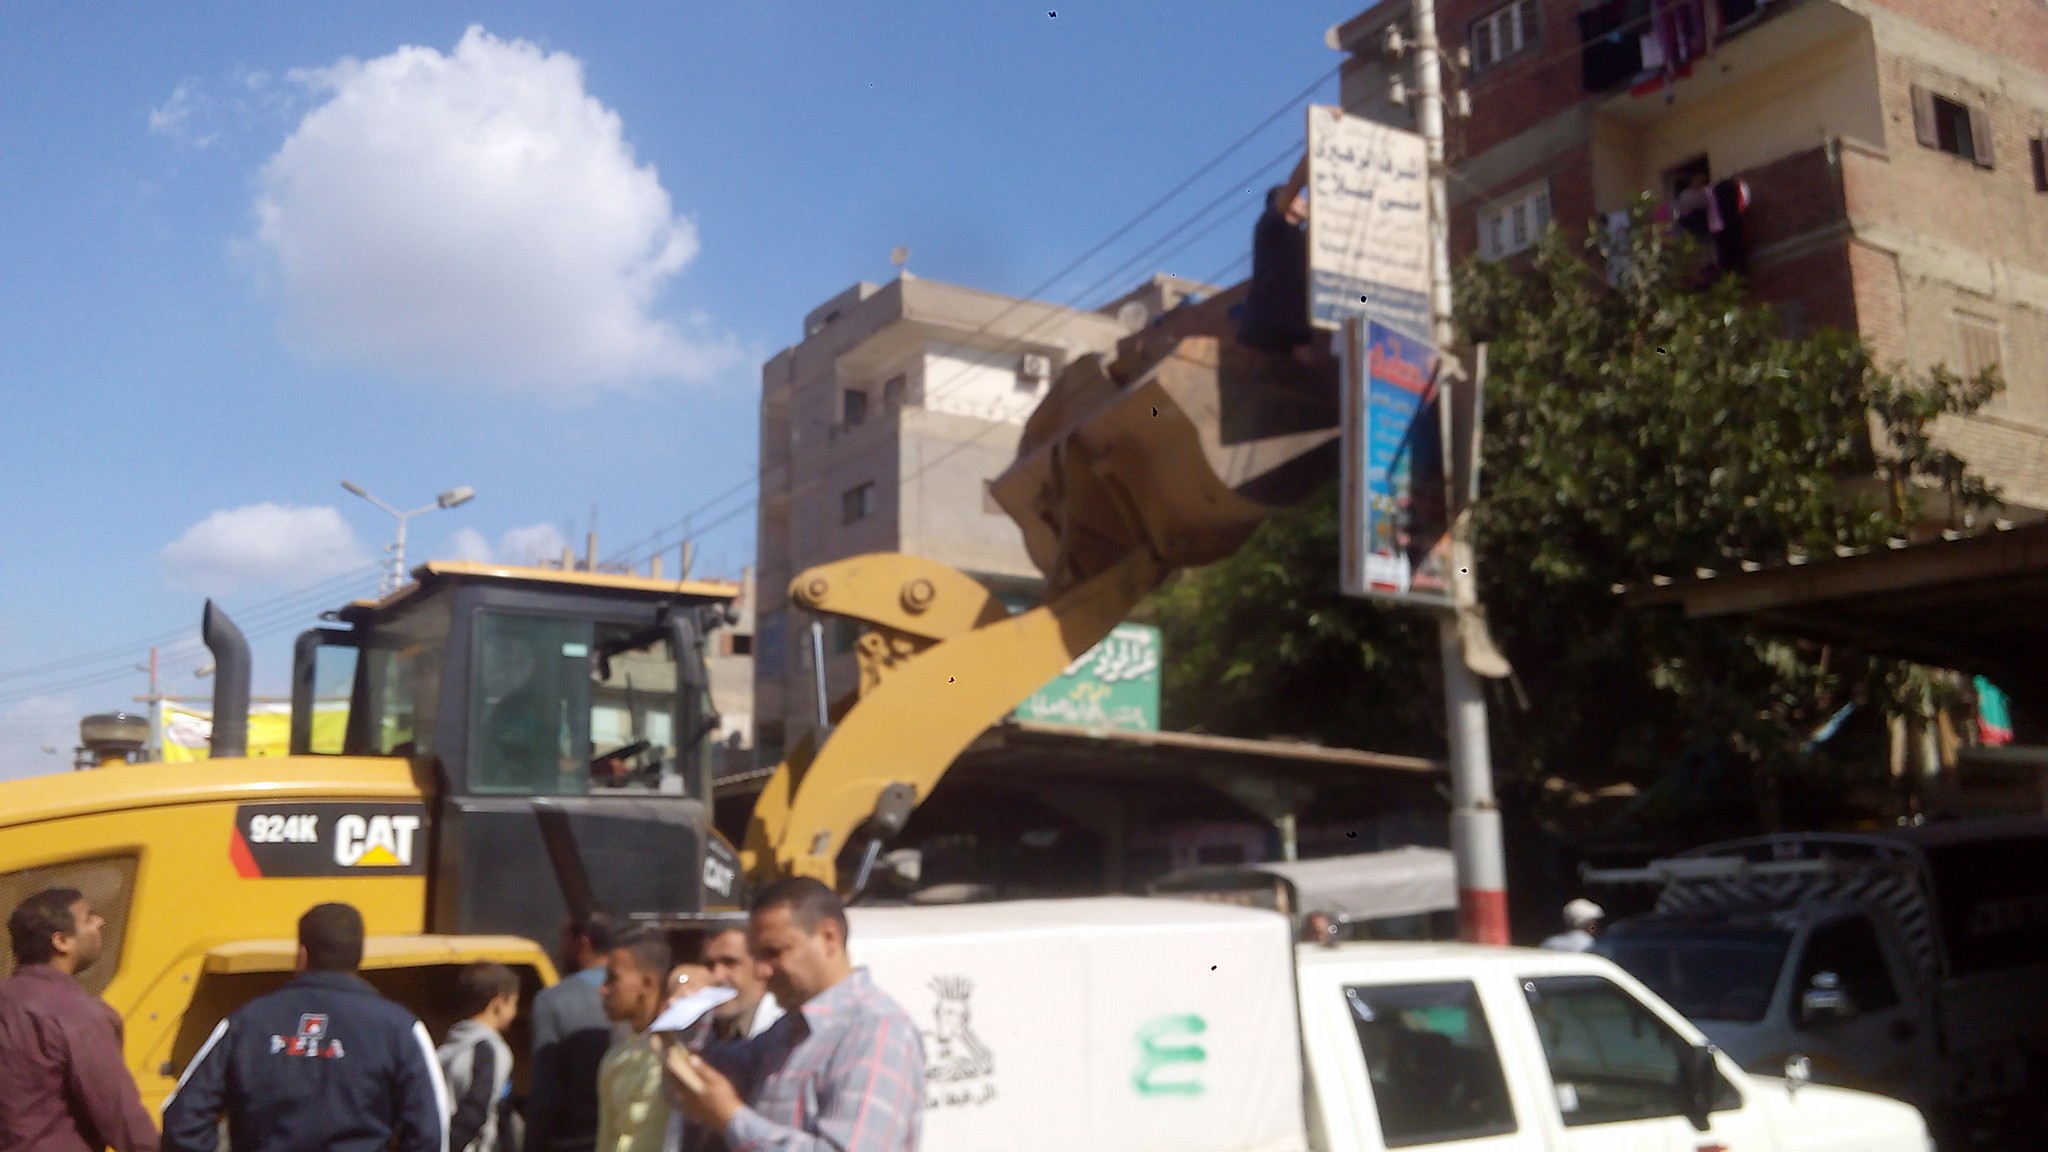 مكبرة لإزالة الإعلانات من شوارع ديرب نجم